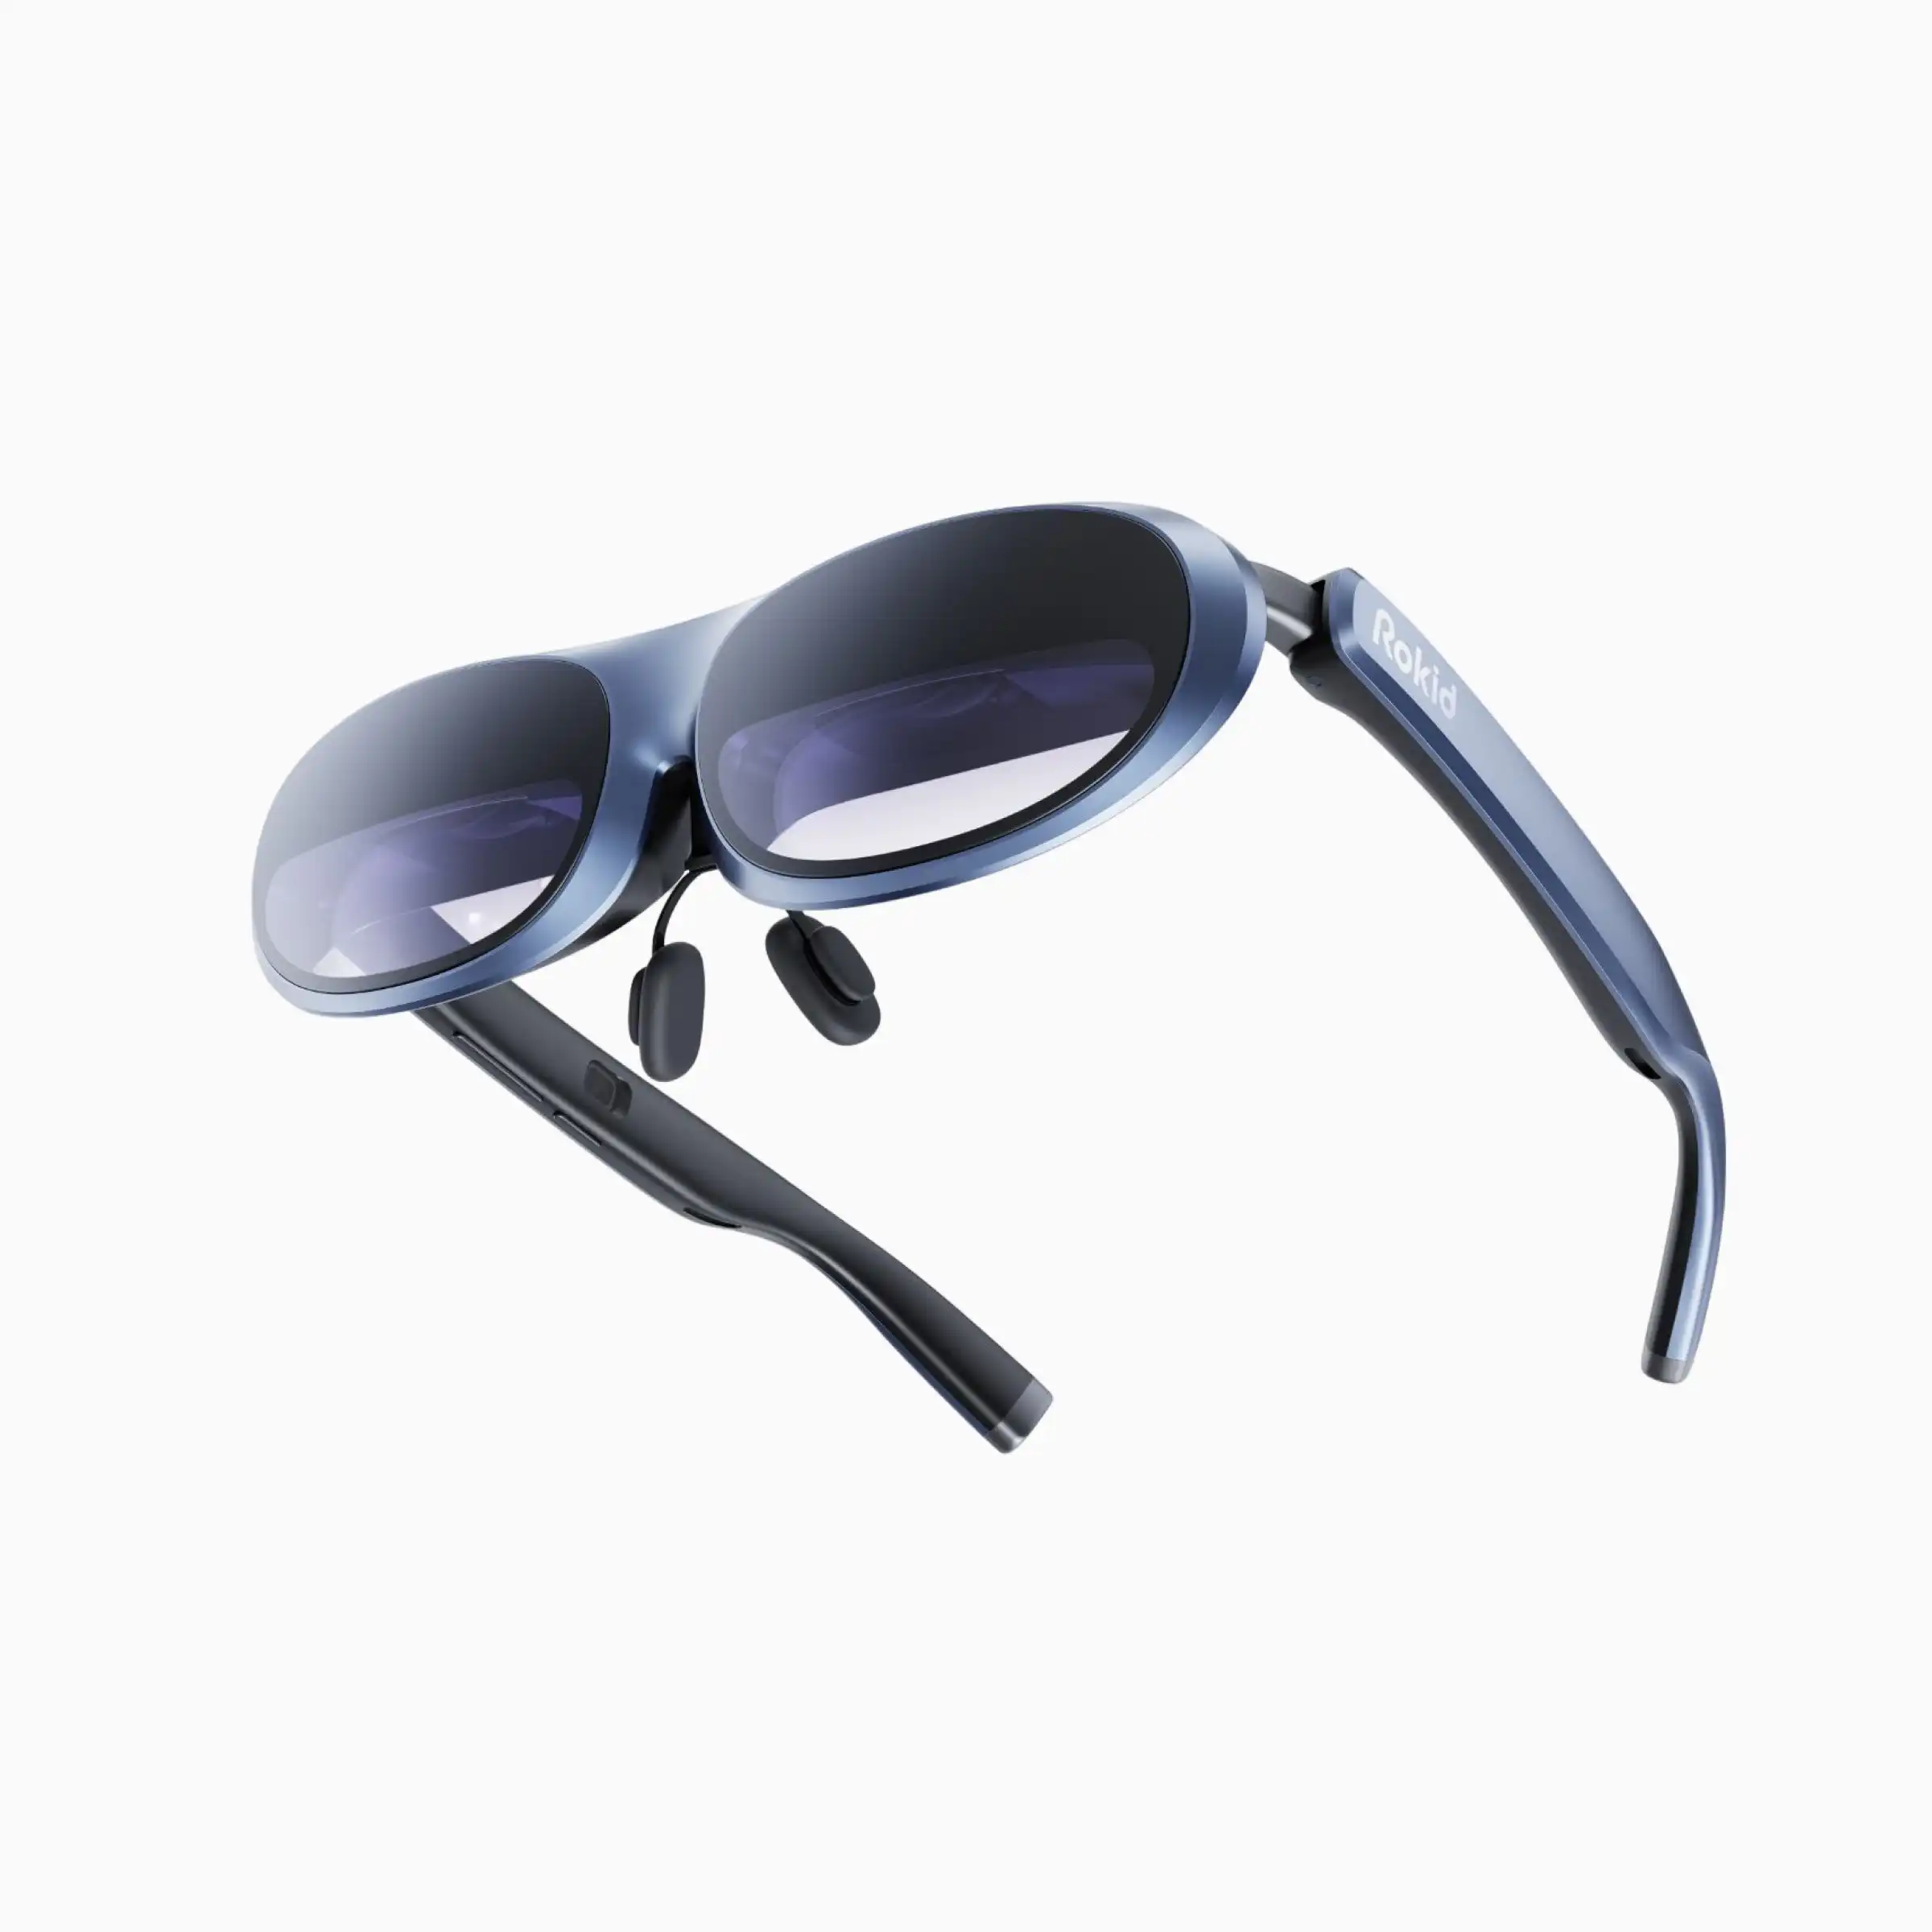 نظارات الواقع المعبر الذكية المحمولة من Wupro x Rokid Max الأكثر مبيعًا بقوة 120 هرتز وتدعم الفيديو ثلاثي الأبعاد ودقة 4K UHD AR